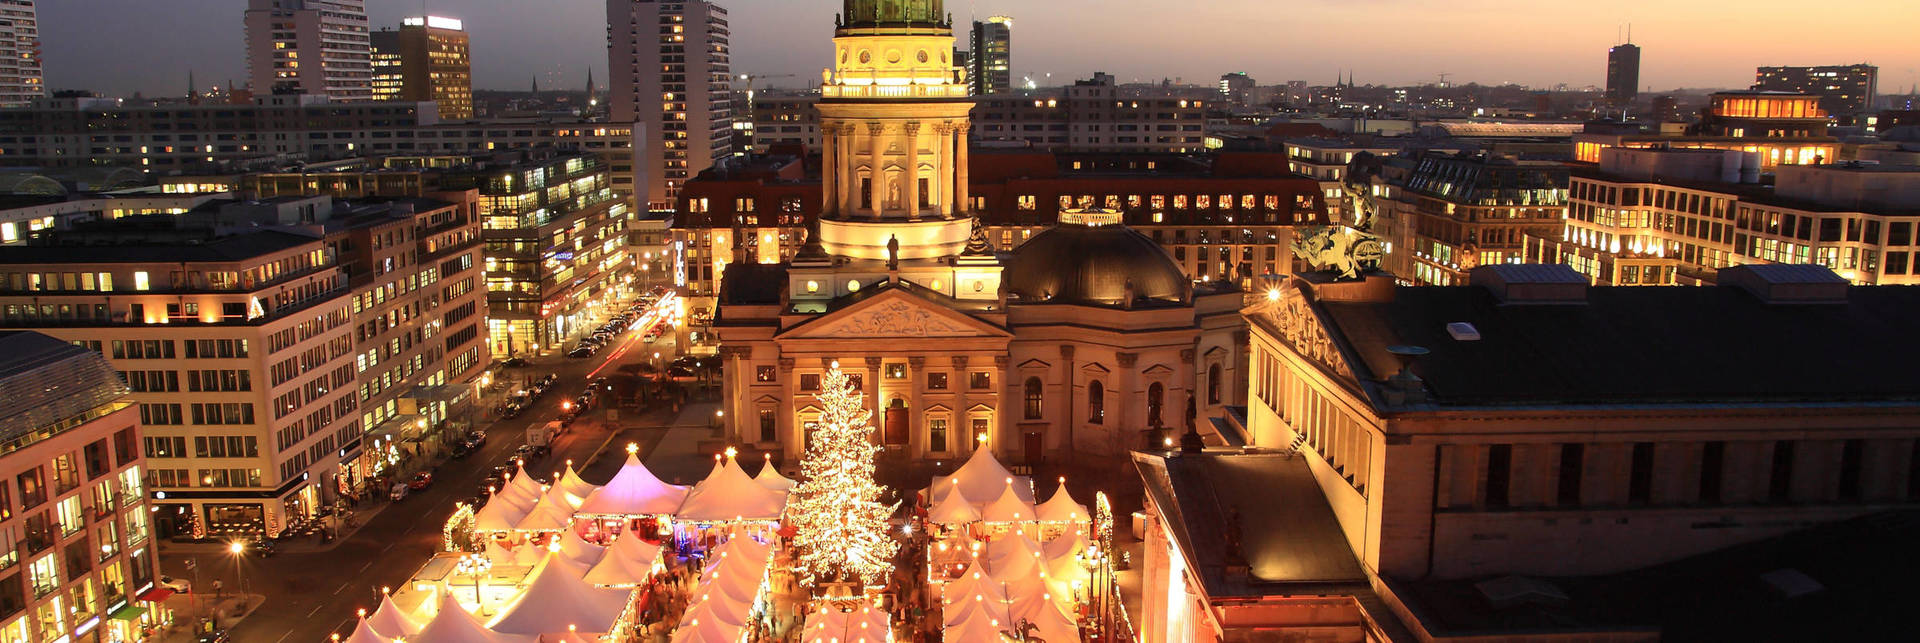 Weihnachtsshopping in Berlin - Offizielle Webseite der H-Hotels